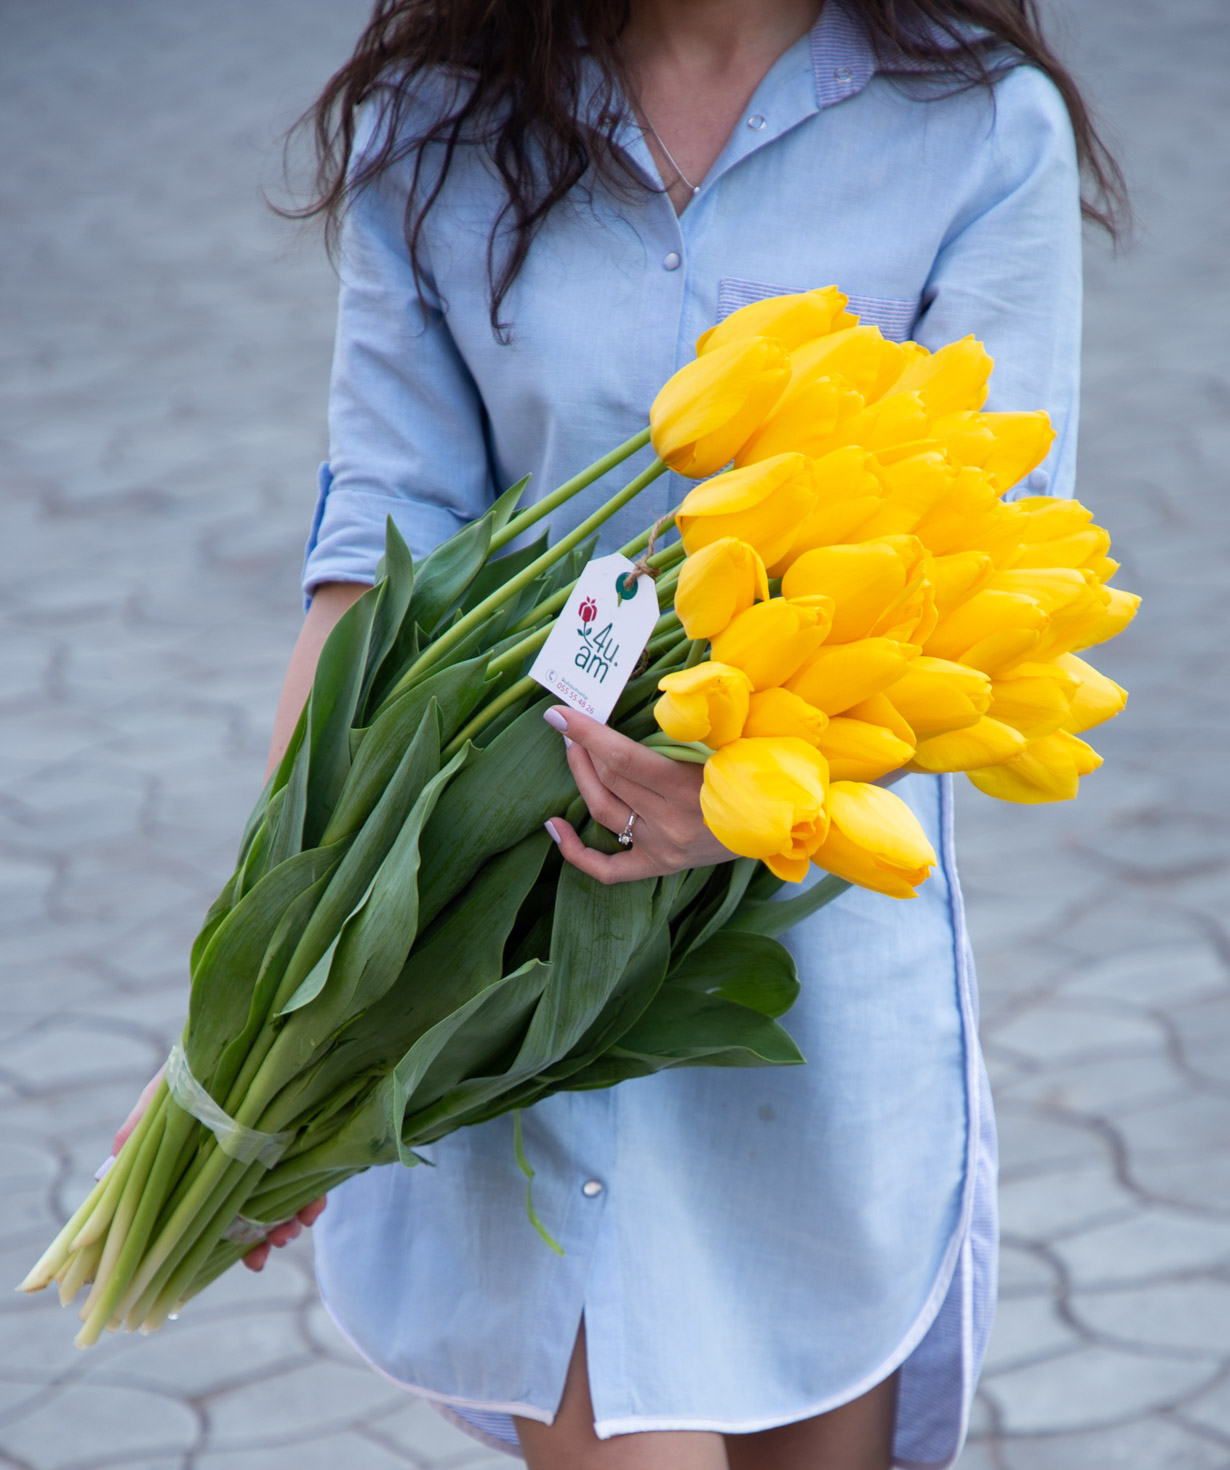 Bouquet `Marietta` with tulips